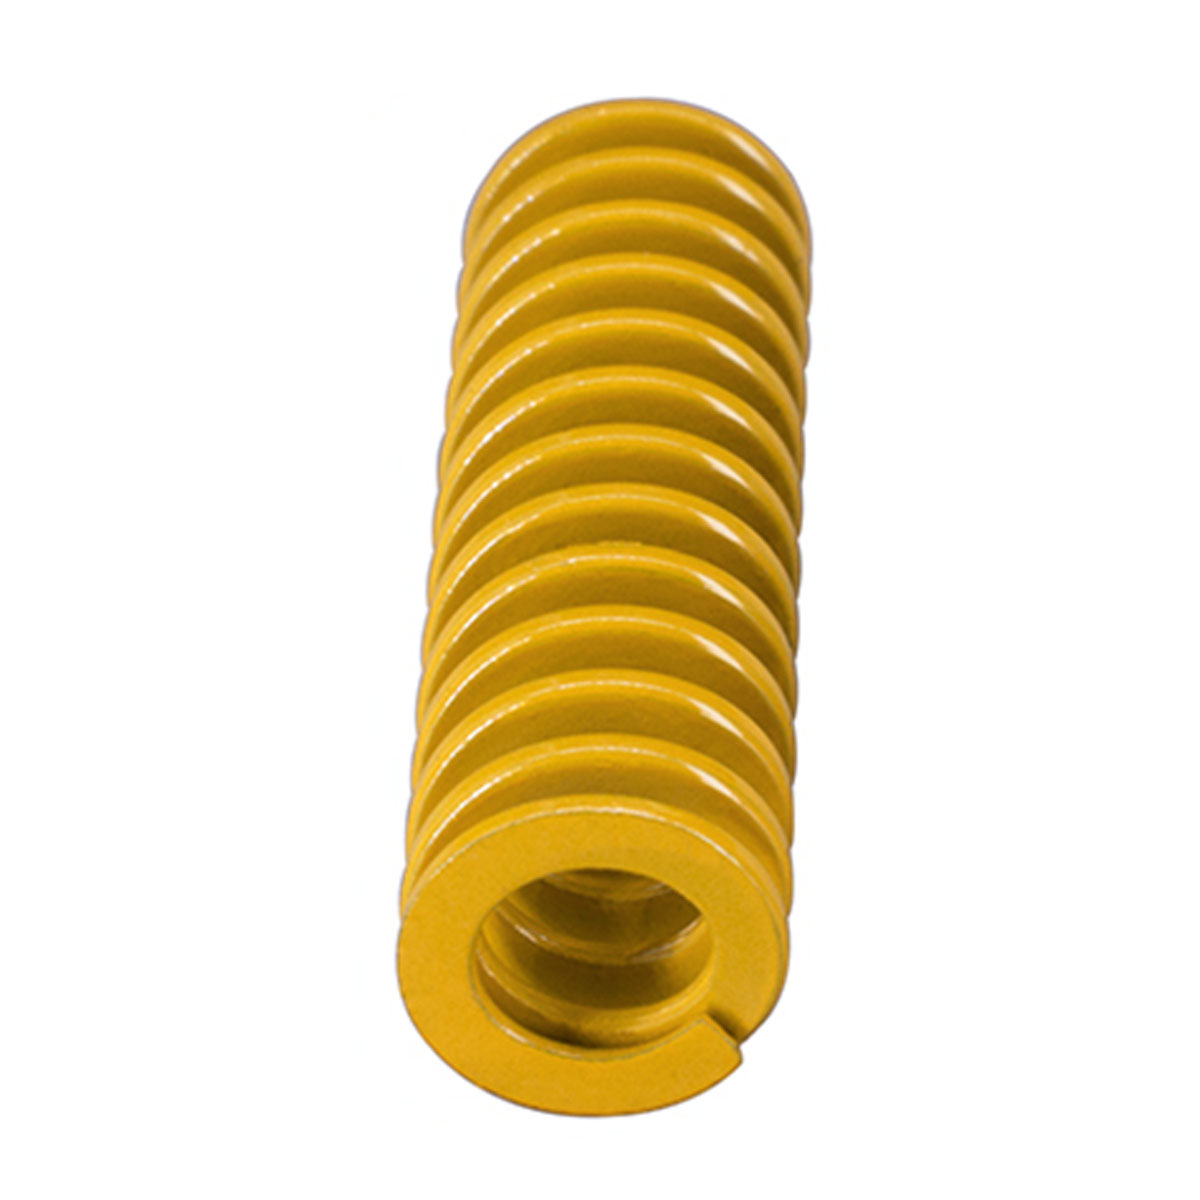 Mola Amarela para Impressora 3D 20mm x 8mm - 4 Unidades